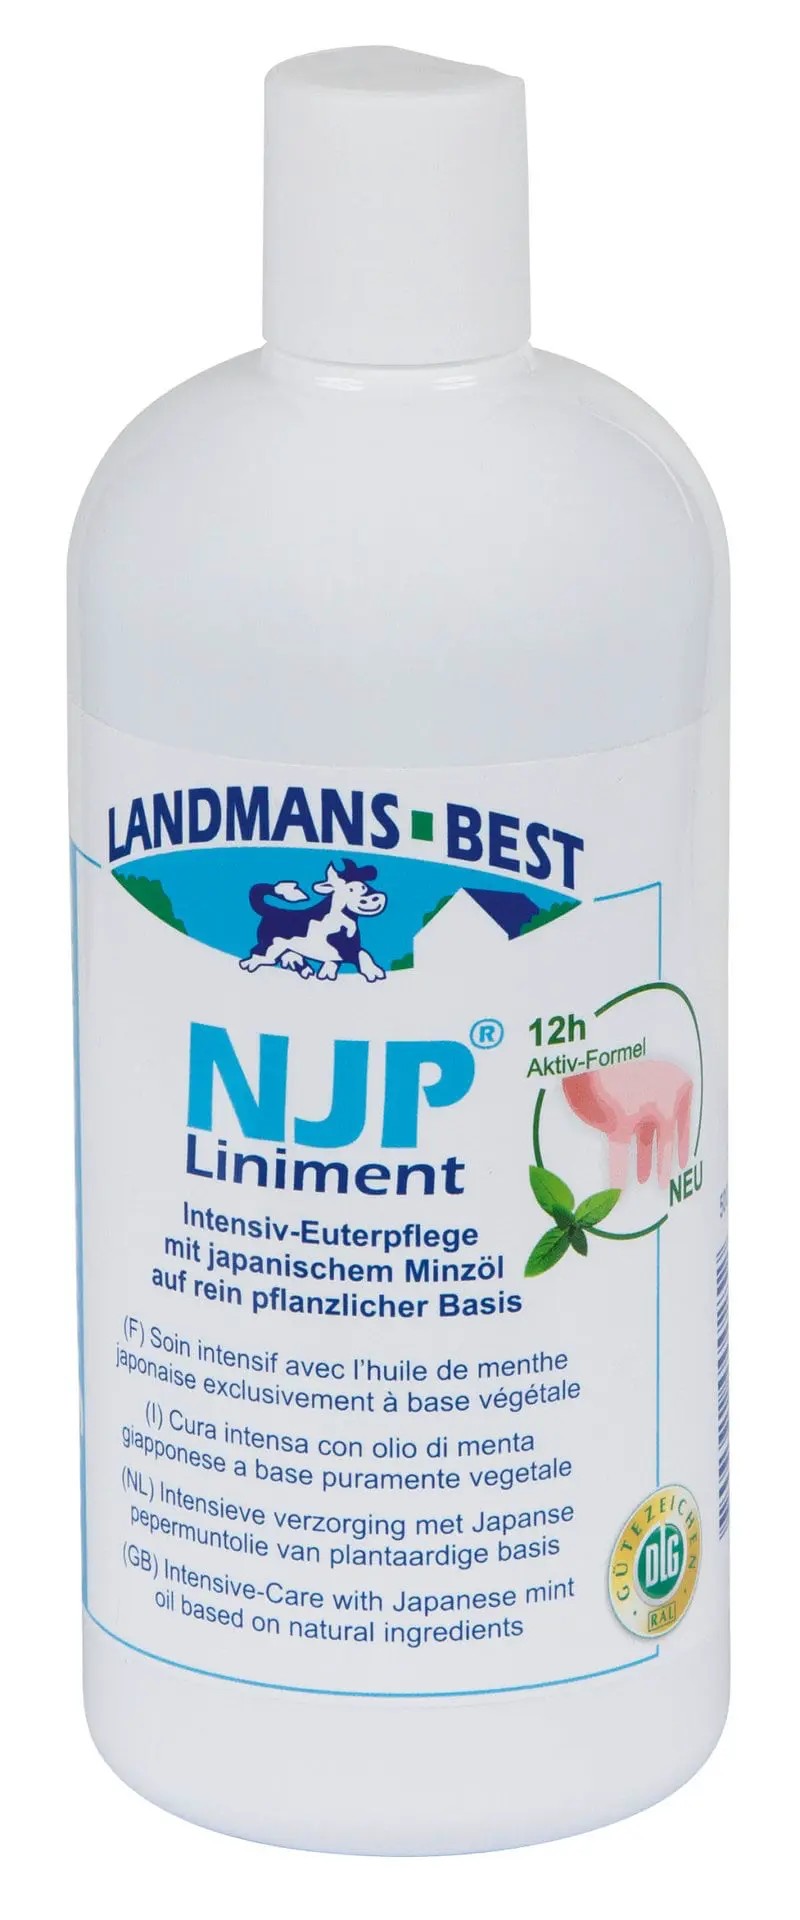 Original NJP-Liniment udder care, 500 ml bottle